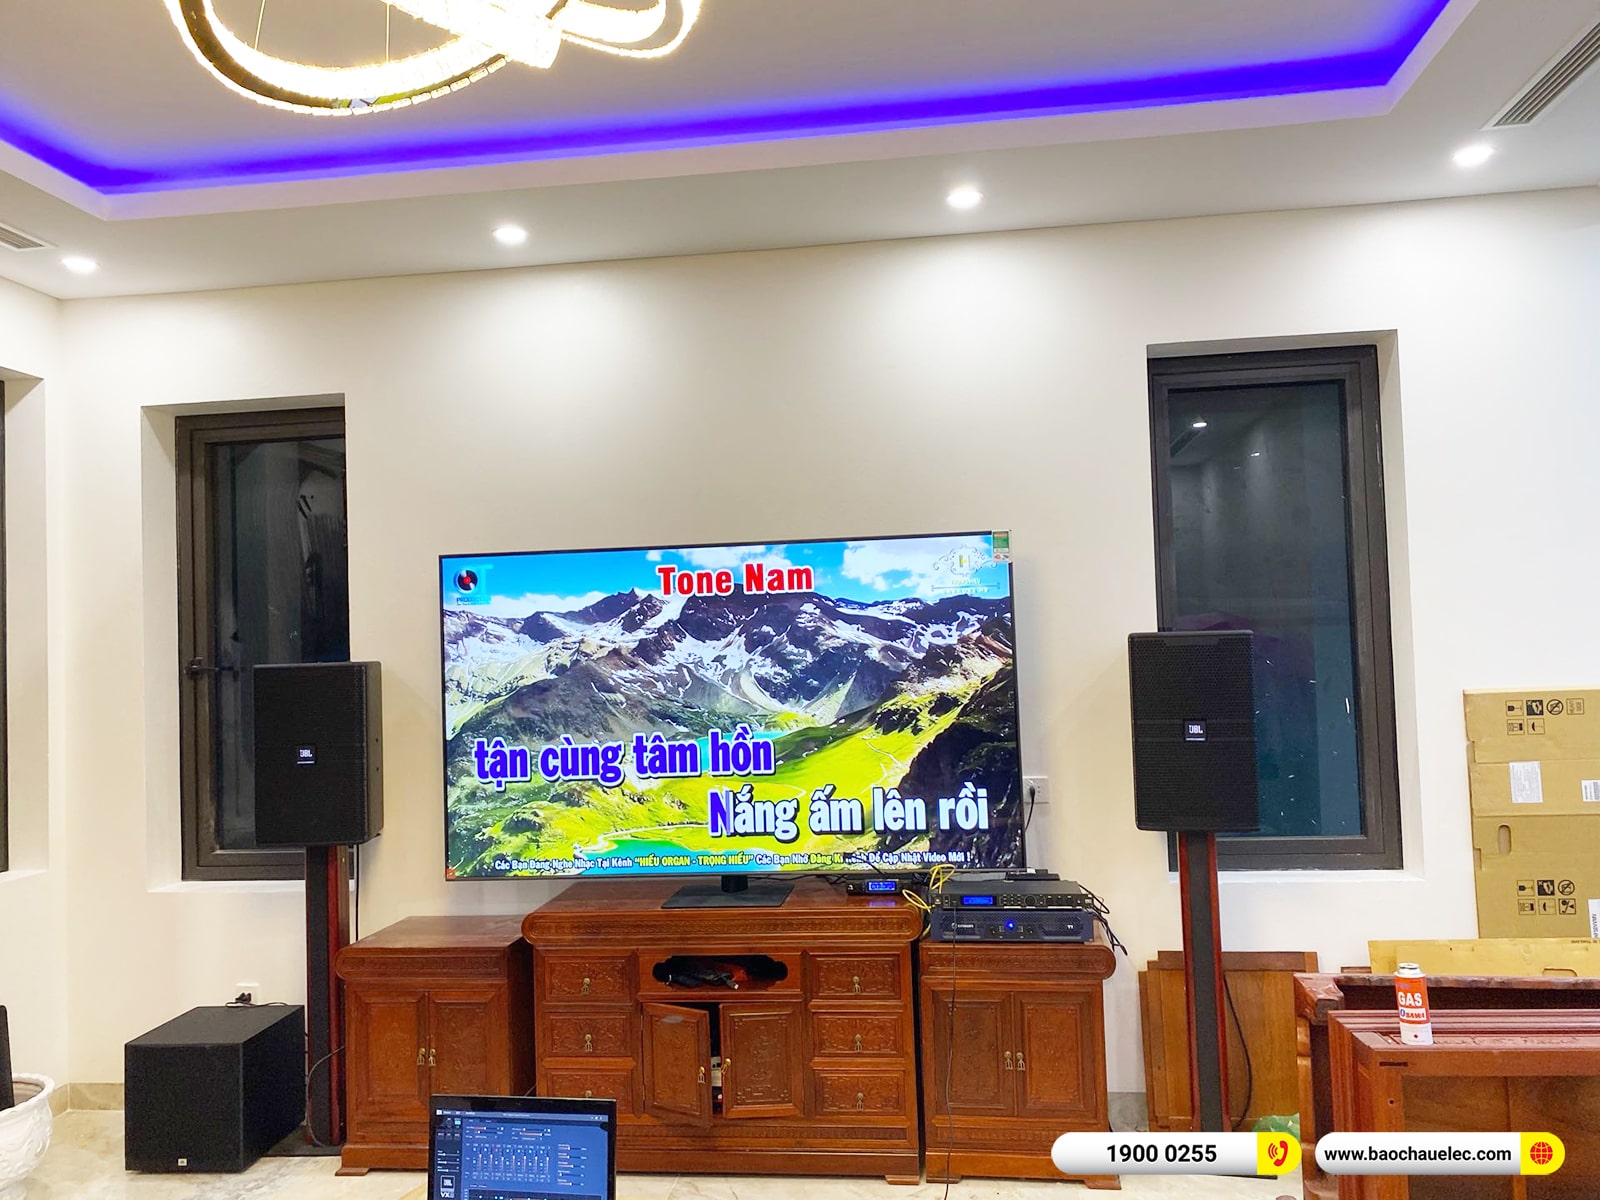 Lắp đặt dàn karaoke JBL gần 84tr cho anh Hà tại Hà Nội (JBL KP4012 G2, Crown T7, JBL VX8, A120P, JBL VM300)